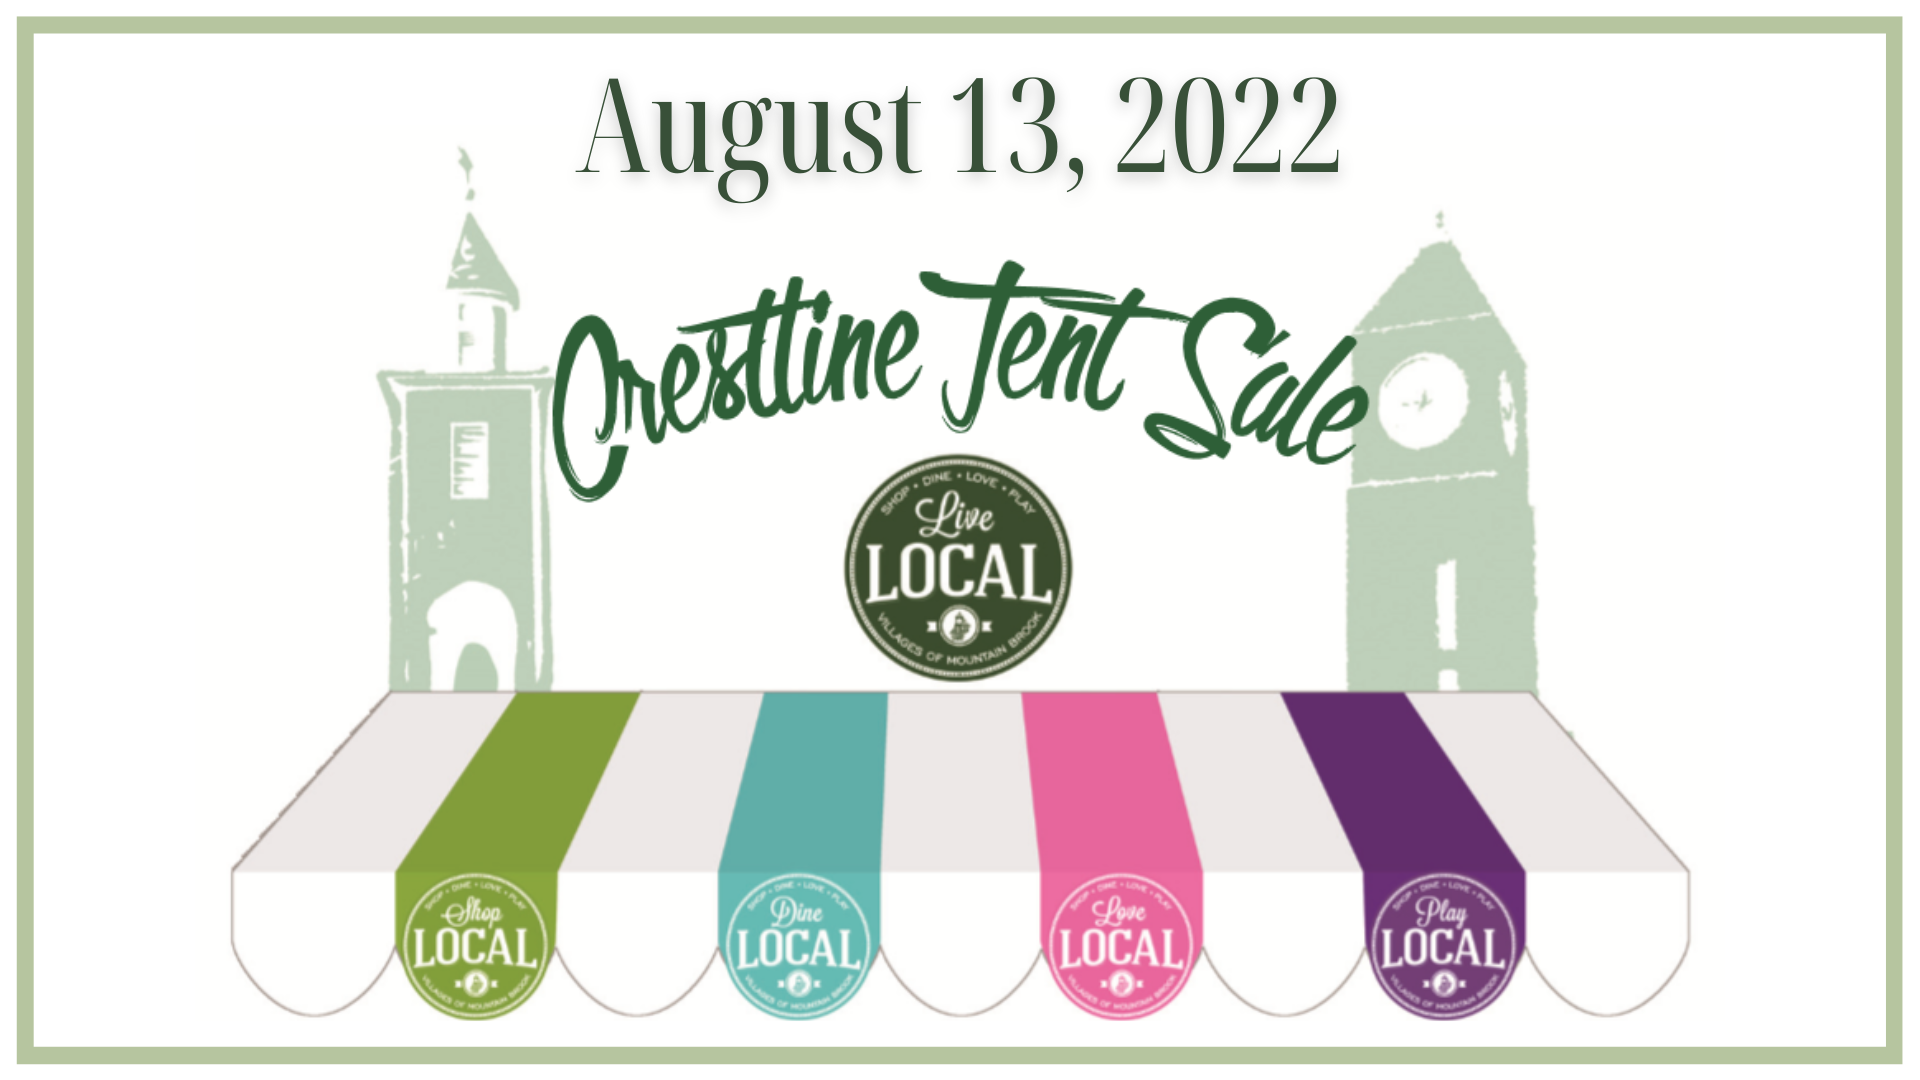 2022 Crestline Tent Sale Crestline Tent Sale